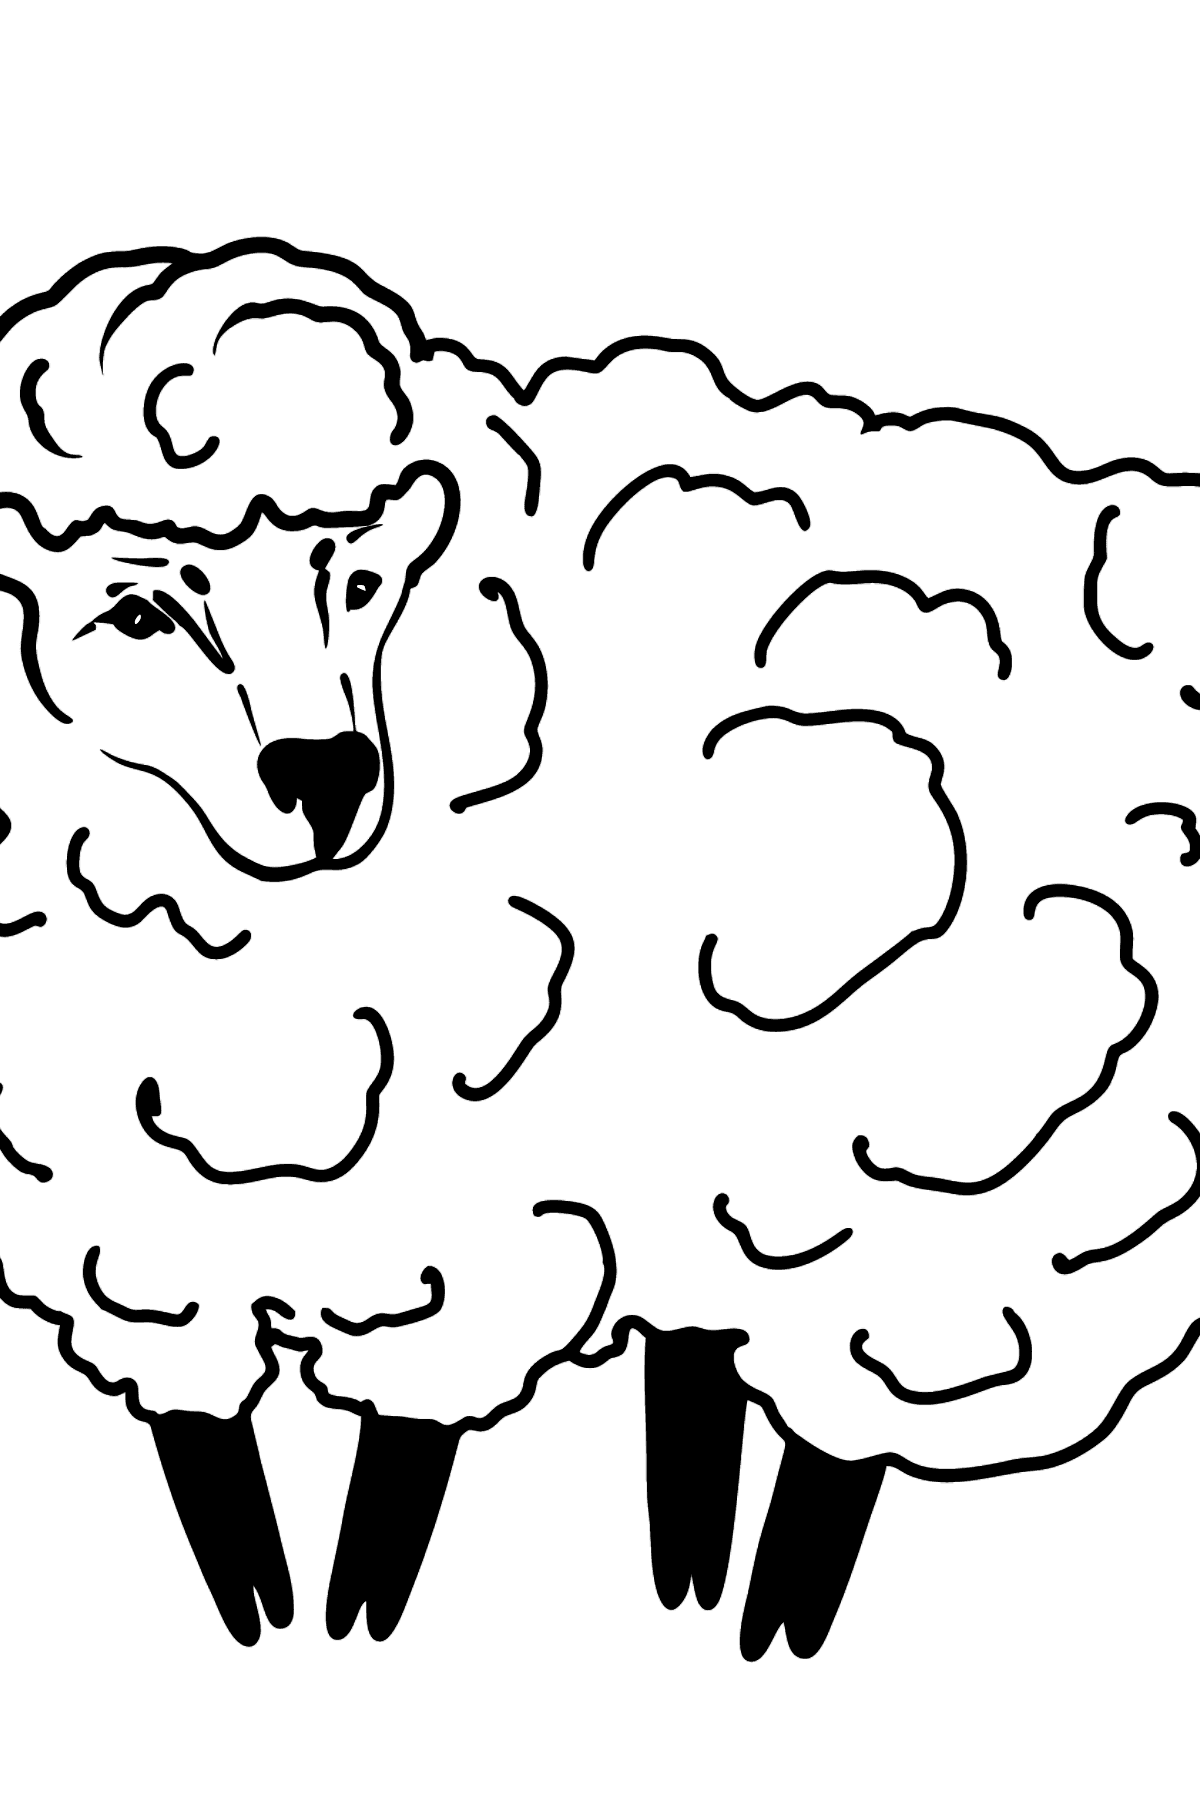 Dibujo de oveja para colorear - Dibujos para Colorear para Niños